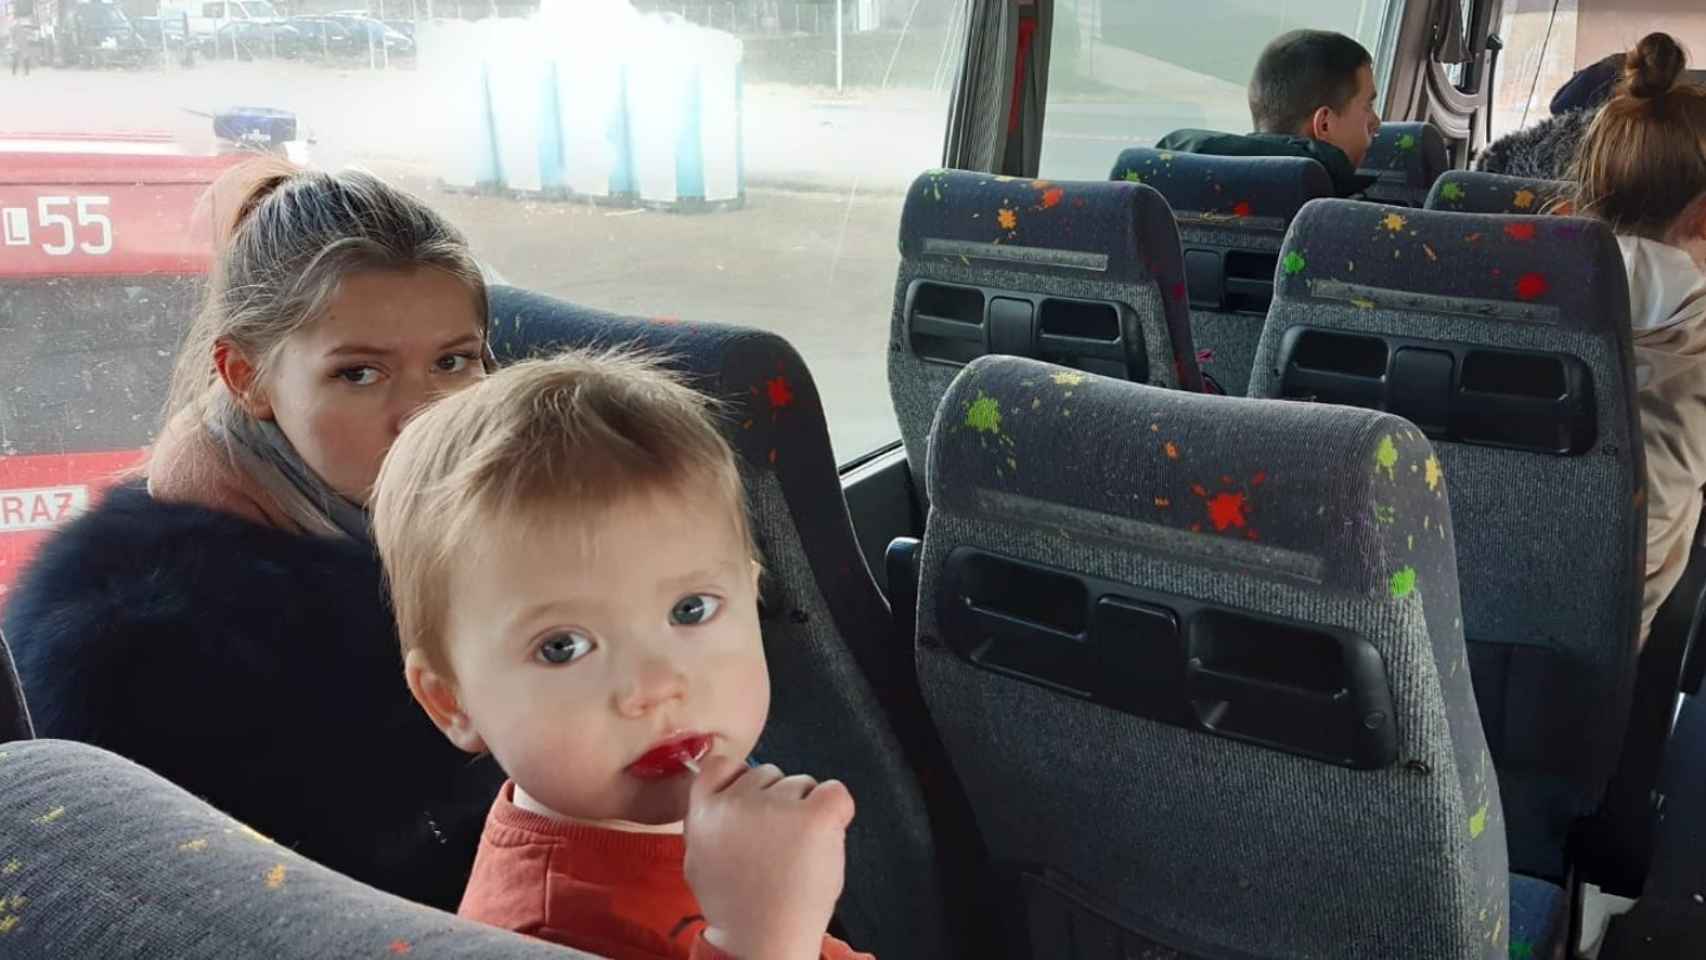 Aldeas Infantiles evacua a República Checa a varios niños ucranianos. Foto: ALDEAS INFANTILES SOS